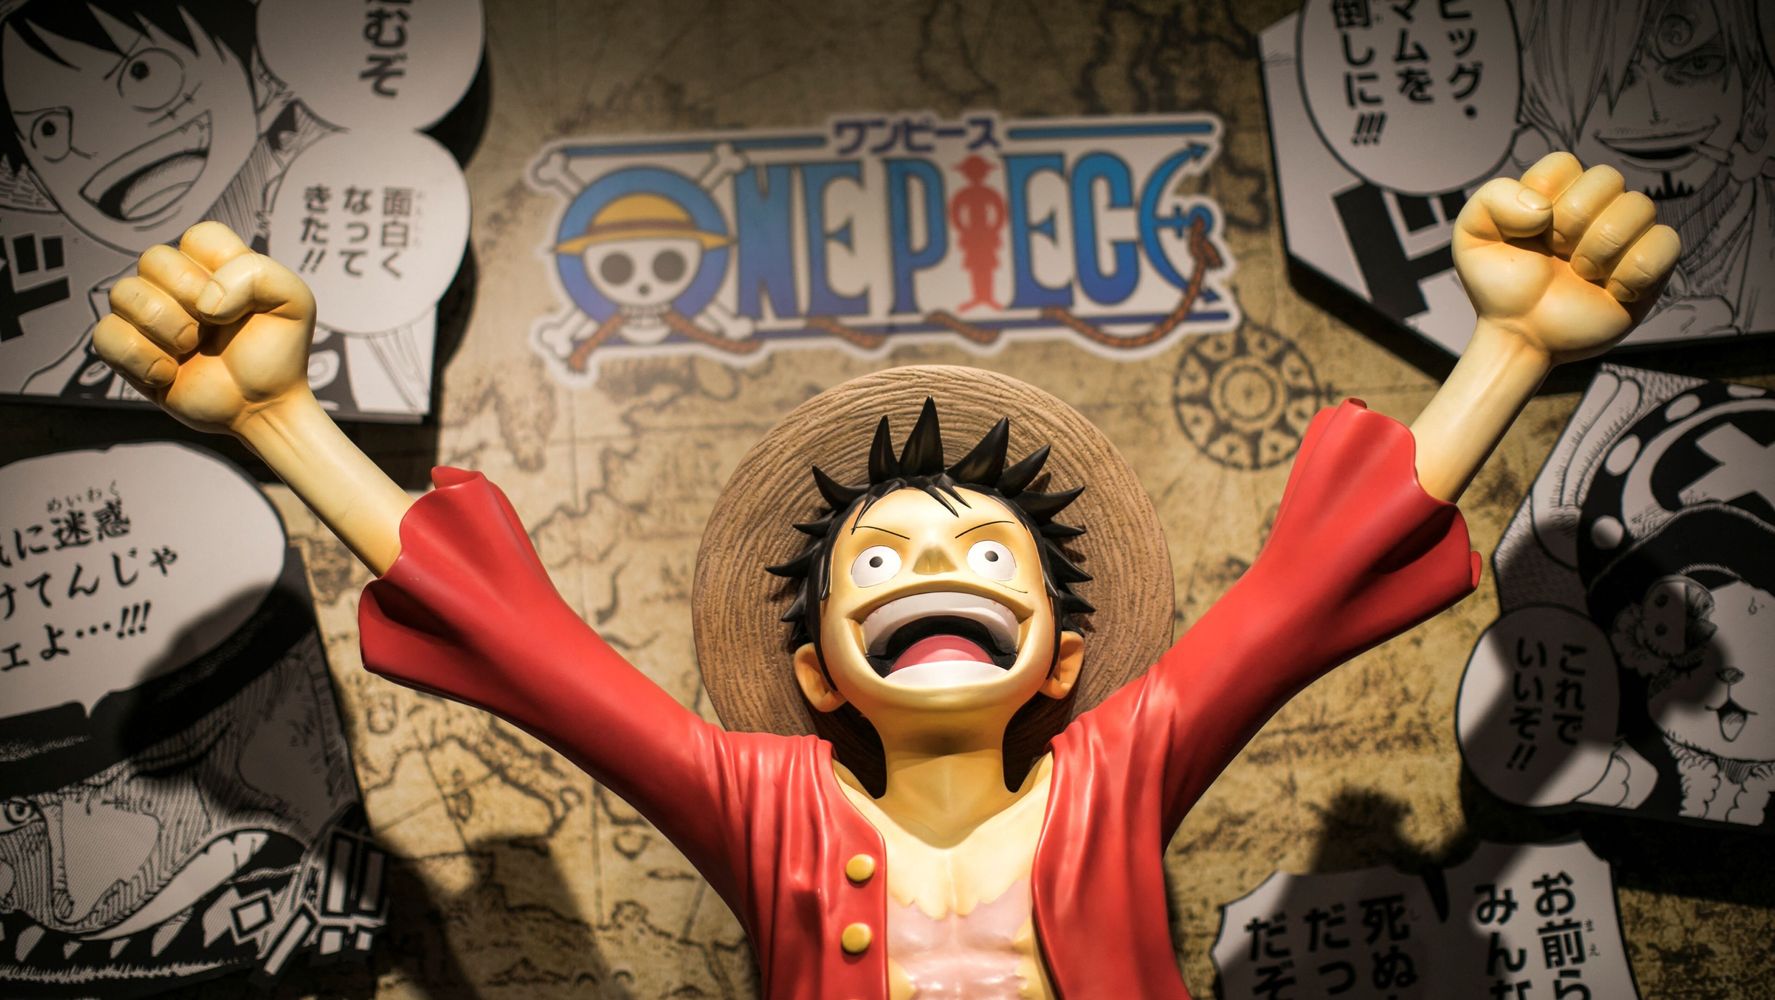 実写版 One Piece 追加キャスト発表 コビー アルビダ ヘルメッポら6人分 ハフポスト アートとカルチャー